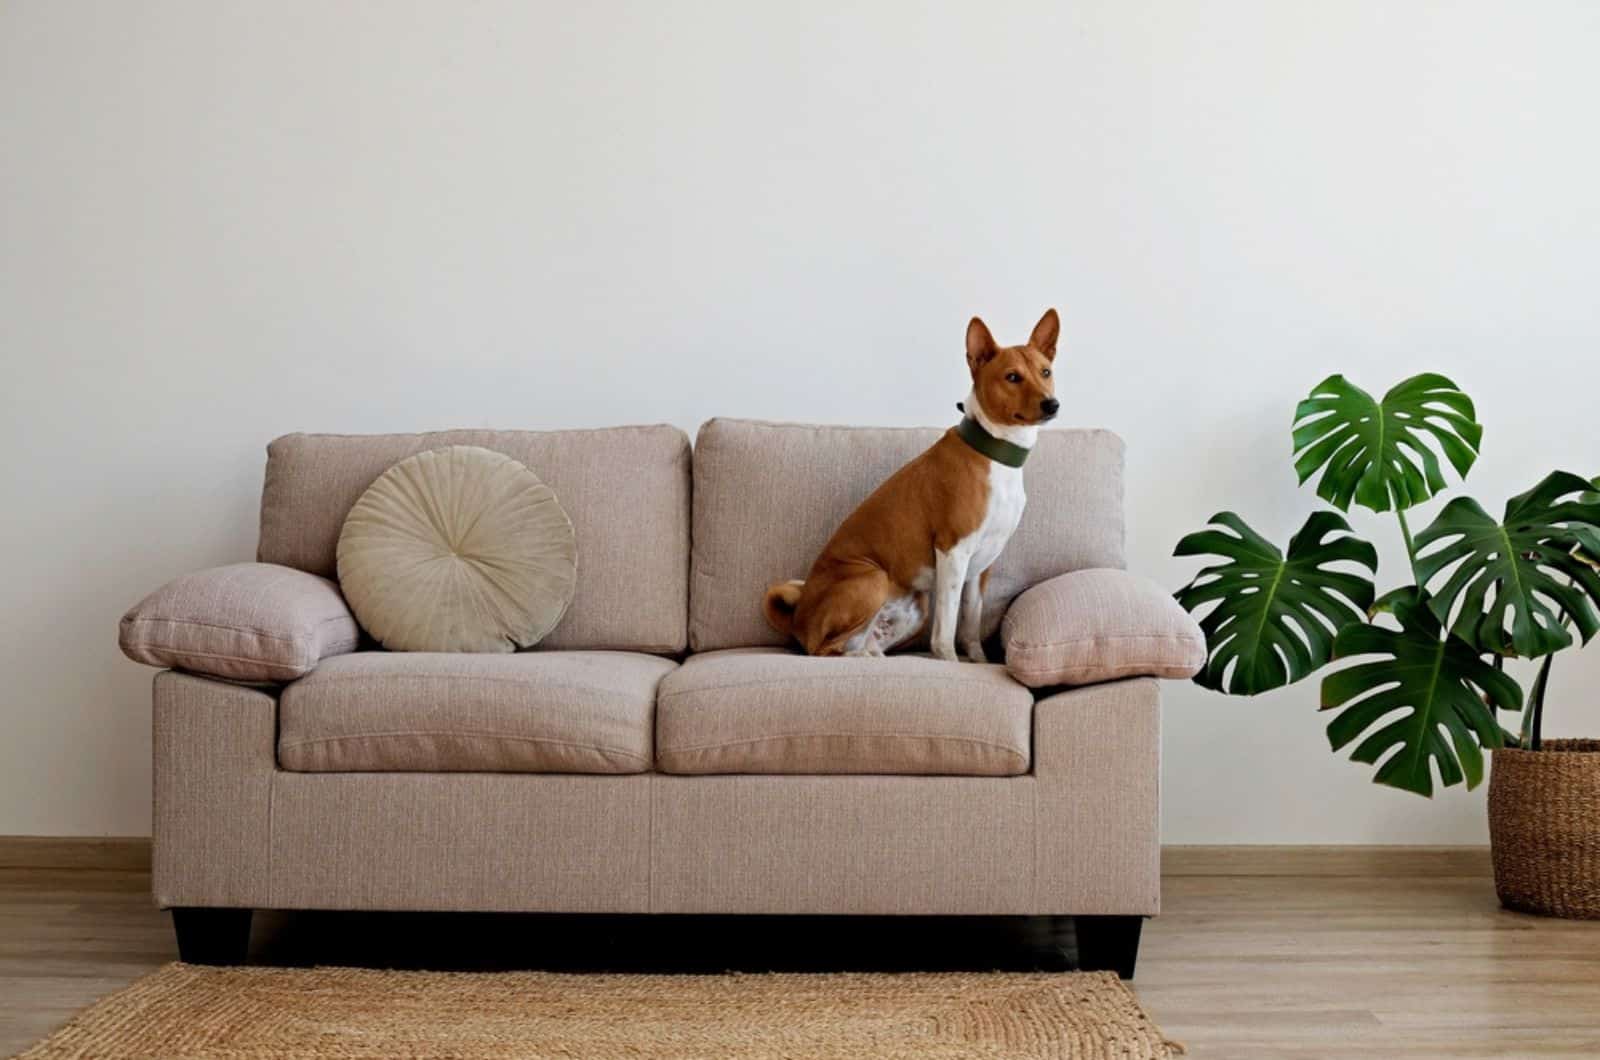 basenji dog sitting on the sofa